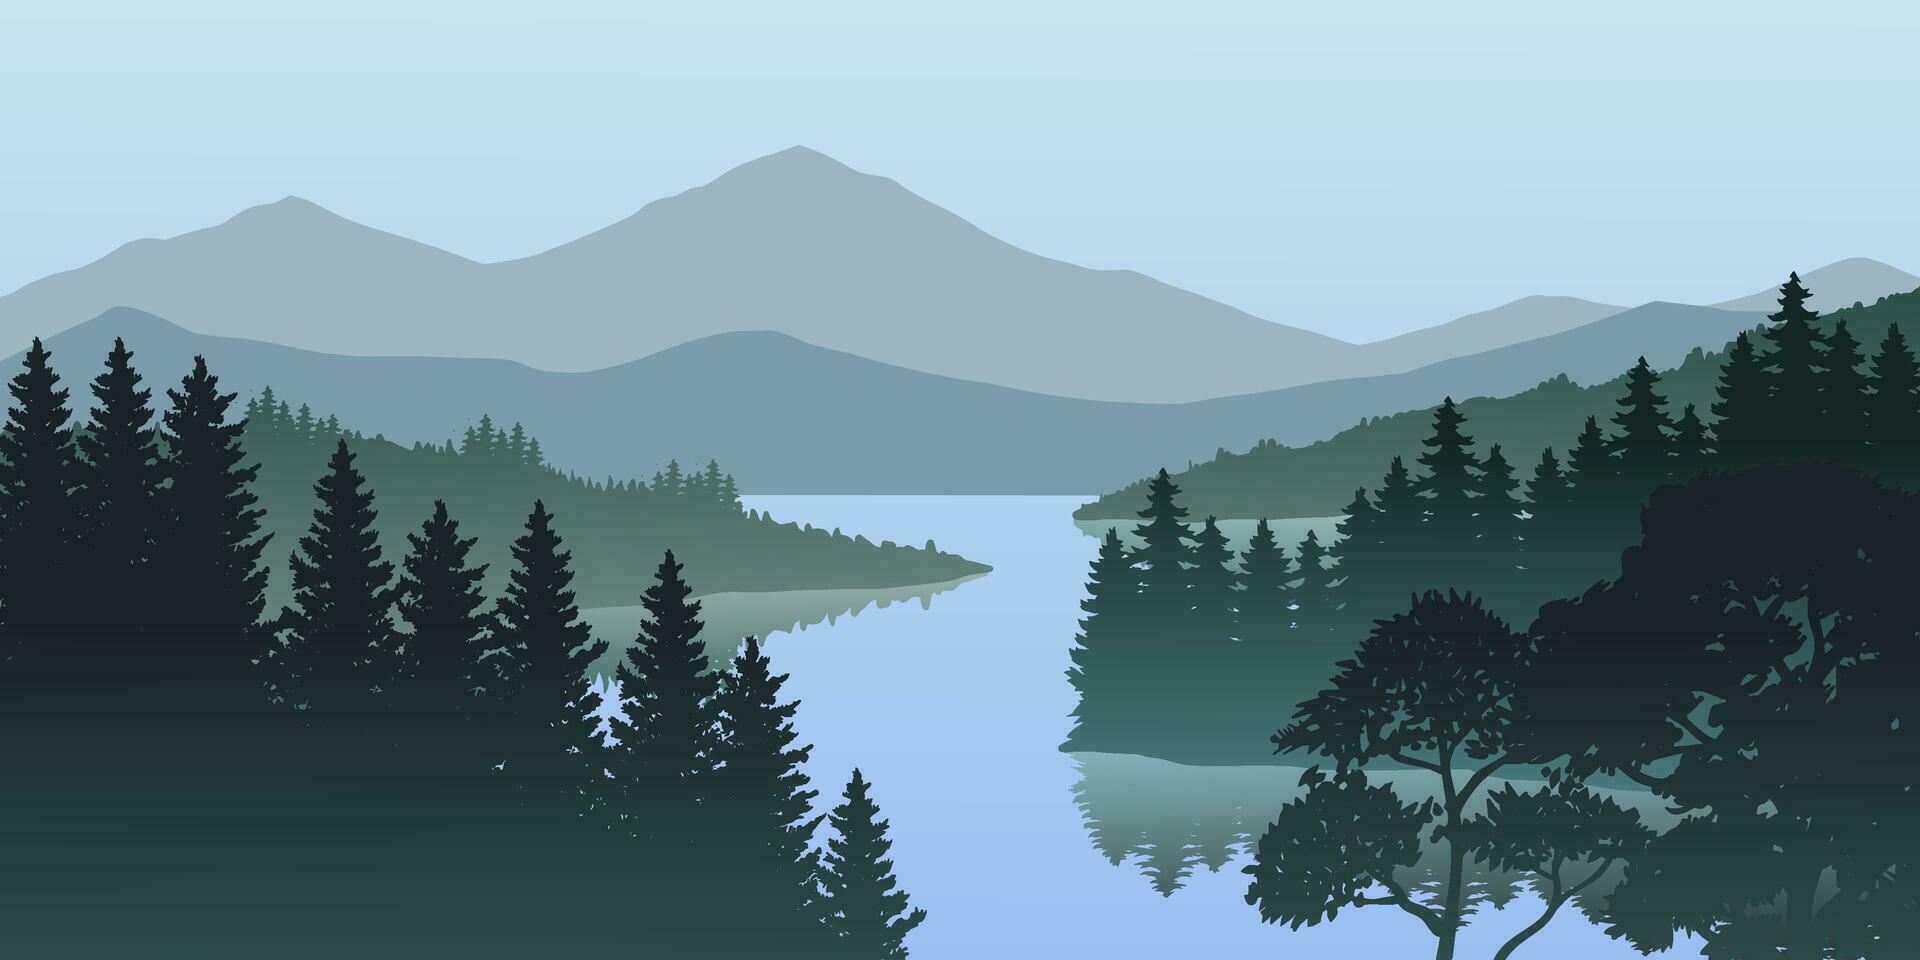 silhouette du paysage naturel. montagnes, forêt en arrière-plan. illustration bleue et verte vecteur